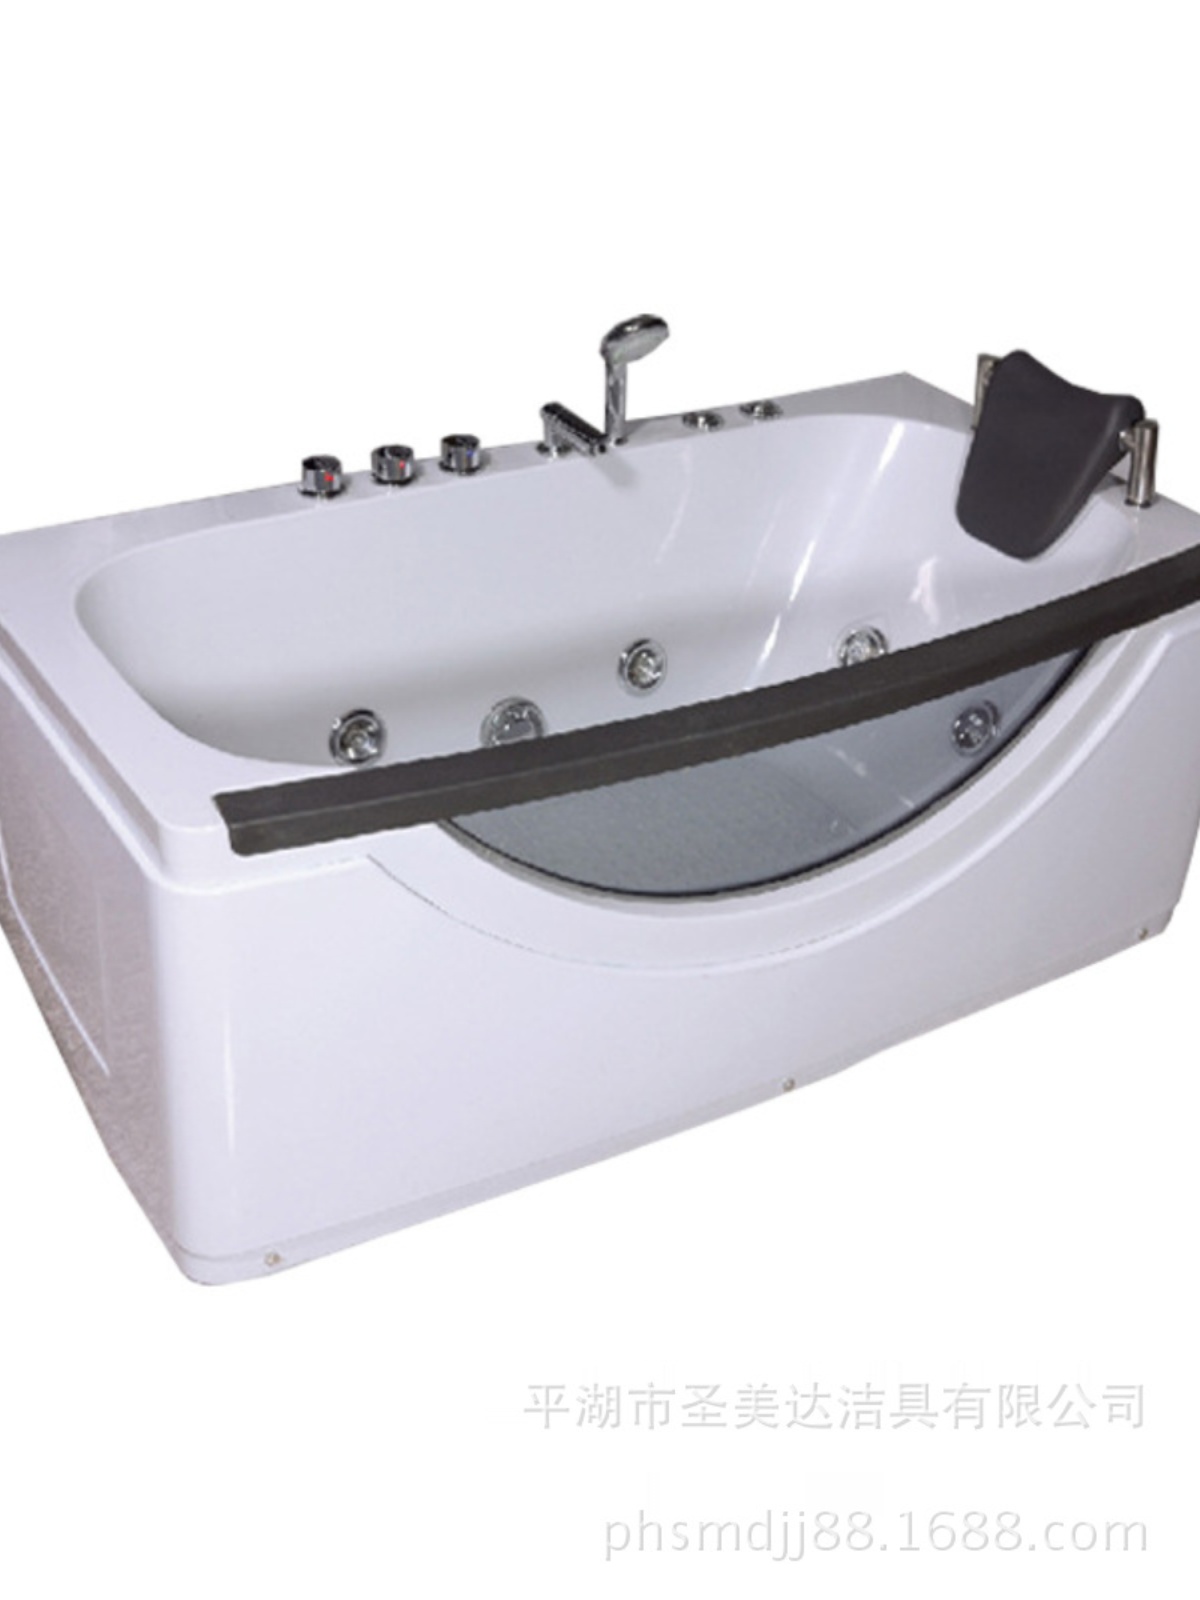 新品长方形家用按摩浴缸单人亚克力独立式现代浴缸冲浪玻璃浴缸15